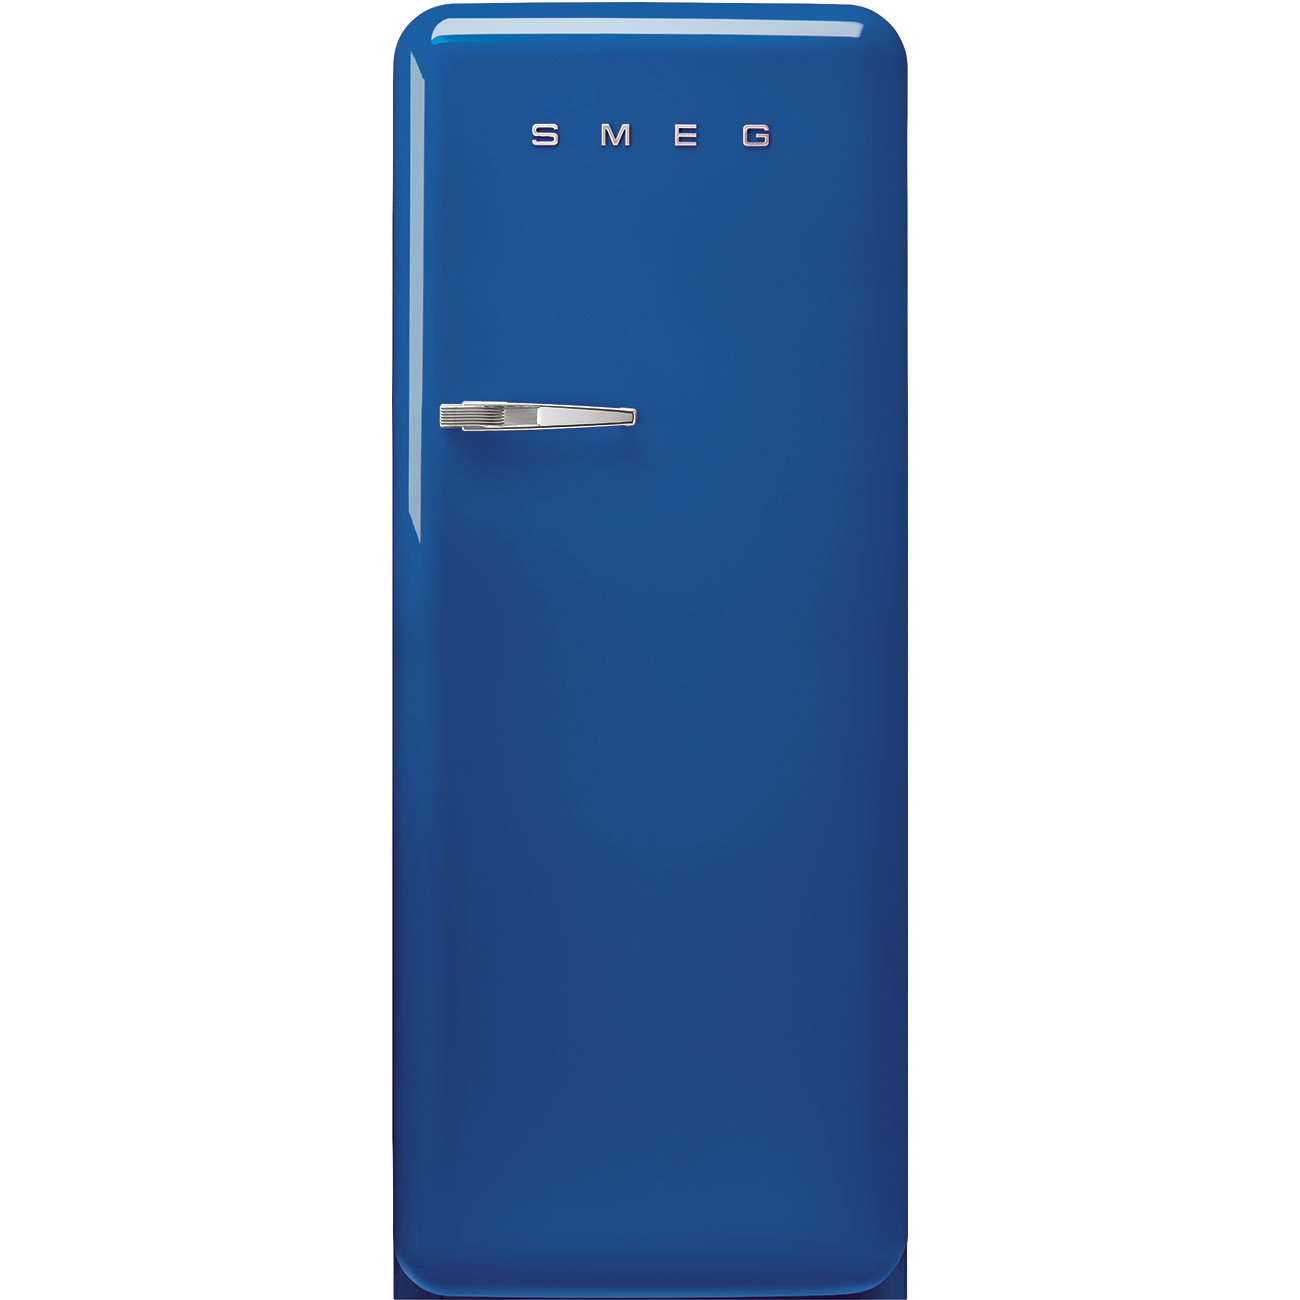 Blau Retro-Kühlschränke von Smeg_1